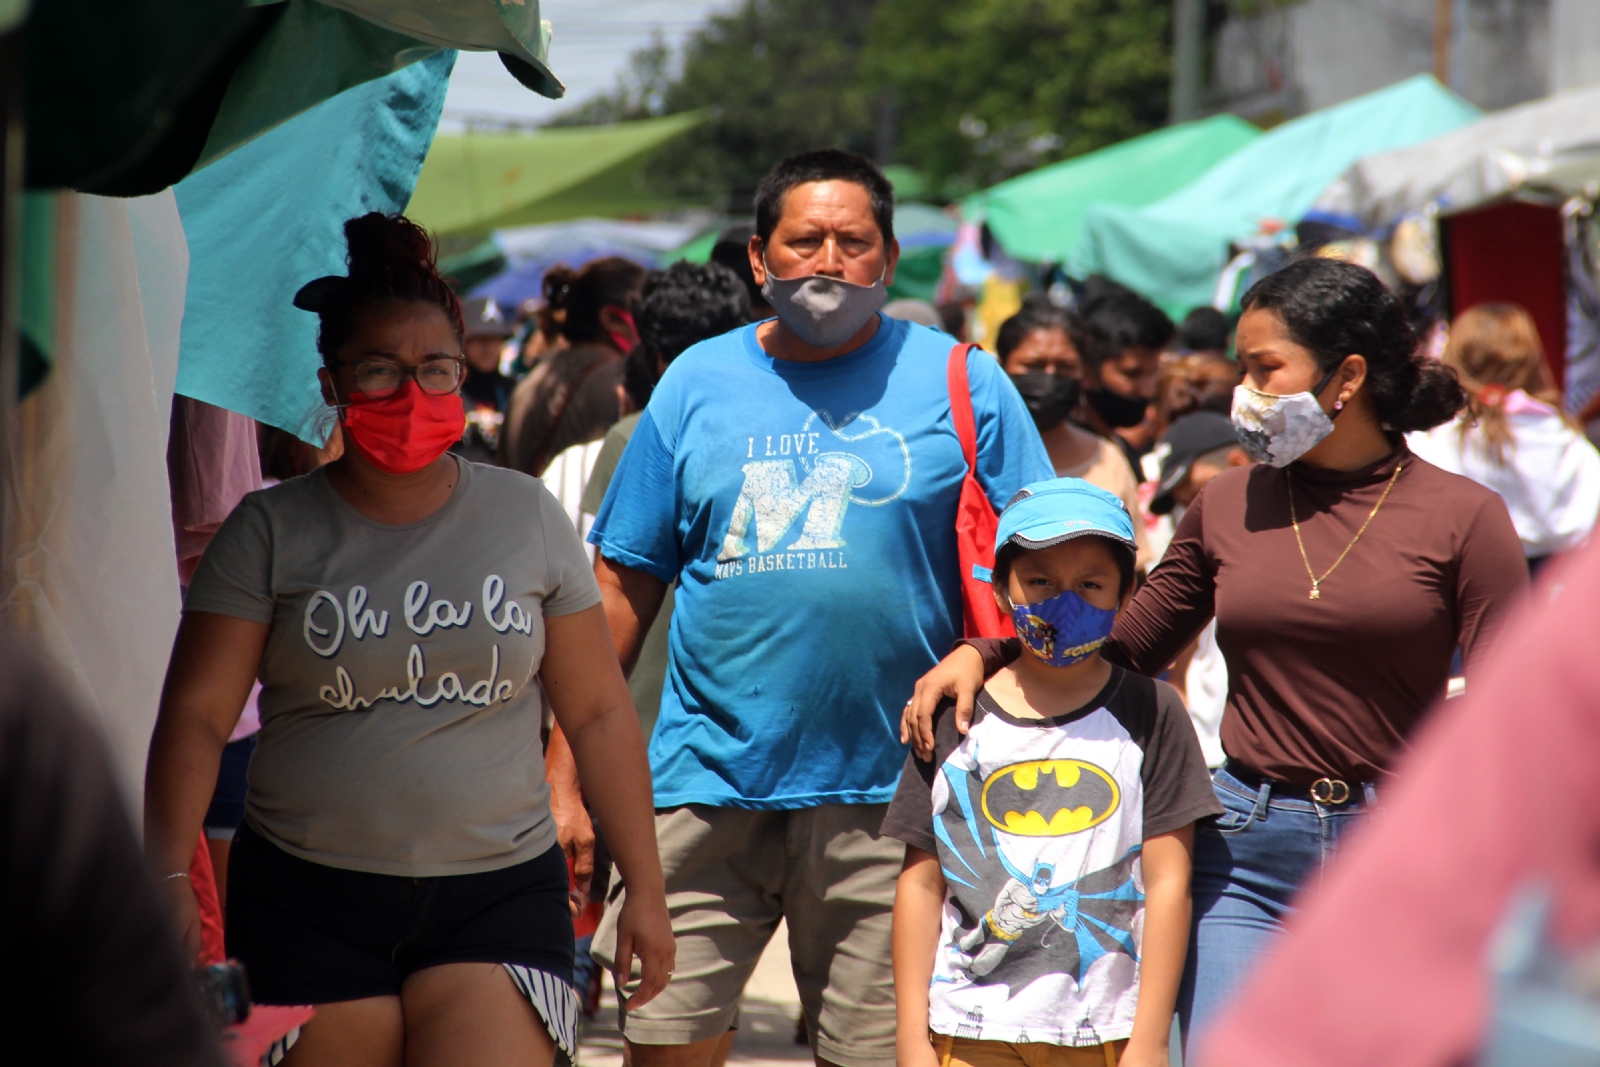 Empresarios exigen multas a tianguis por contagios de COVID-19 en Cancún